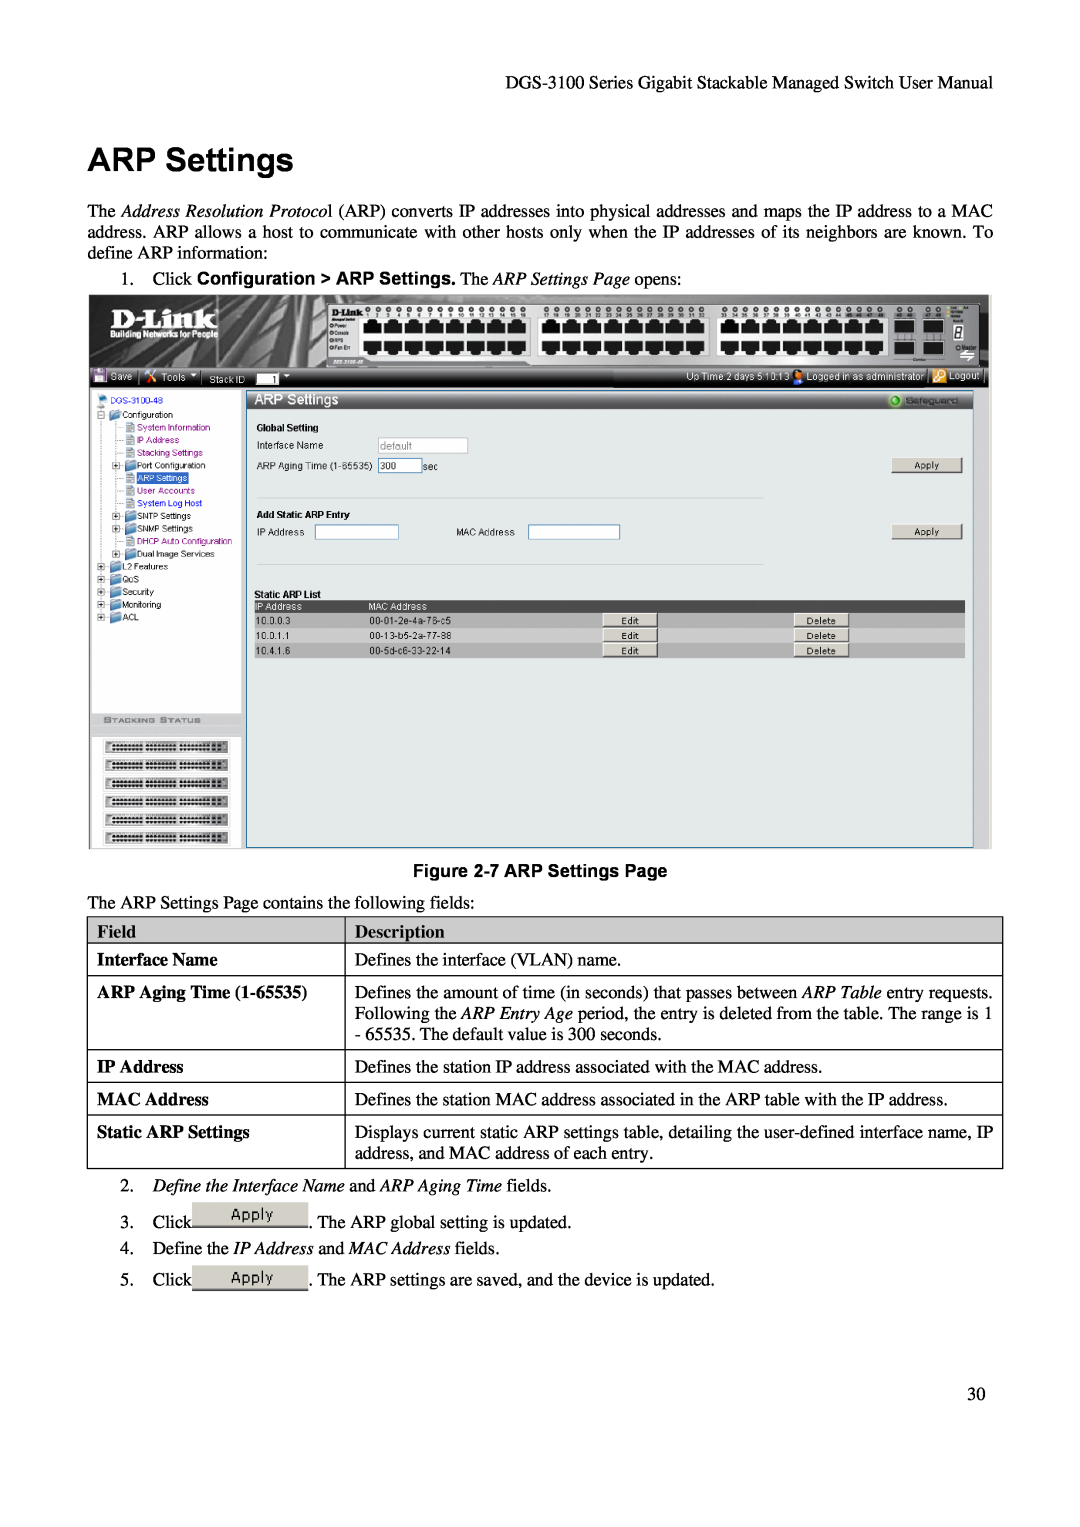 D-Link DGS-3100 Click Configuration ARP Settings. The ARP Settings Page opens, 7 ARP Settings Page, Description 